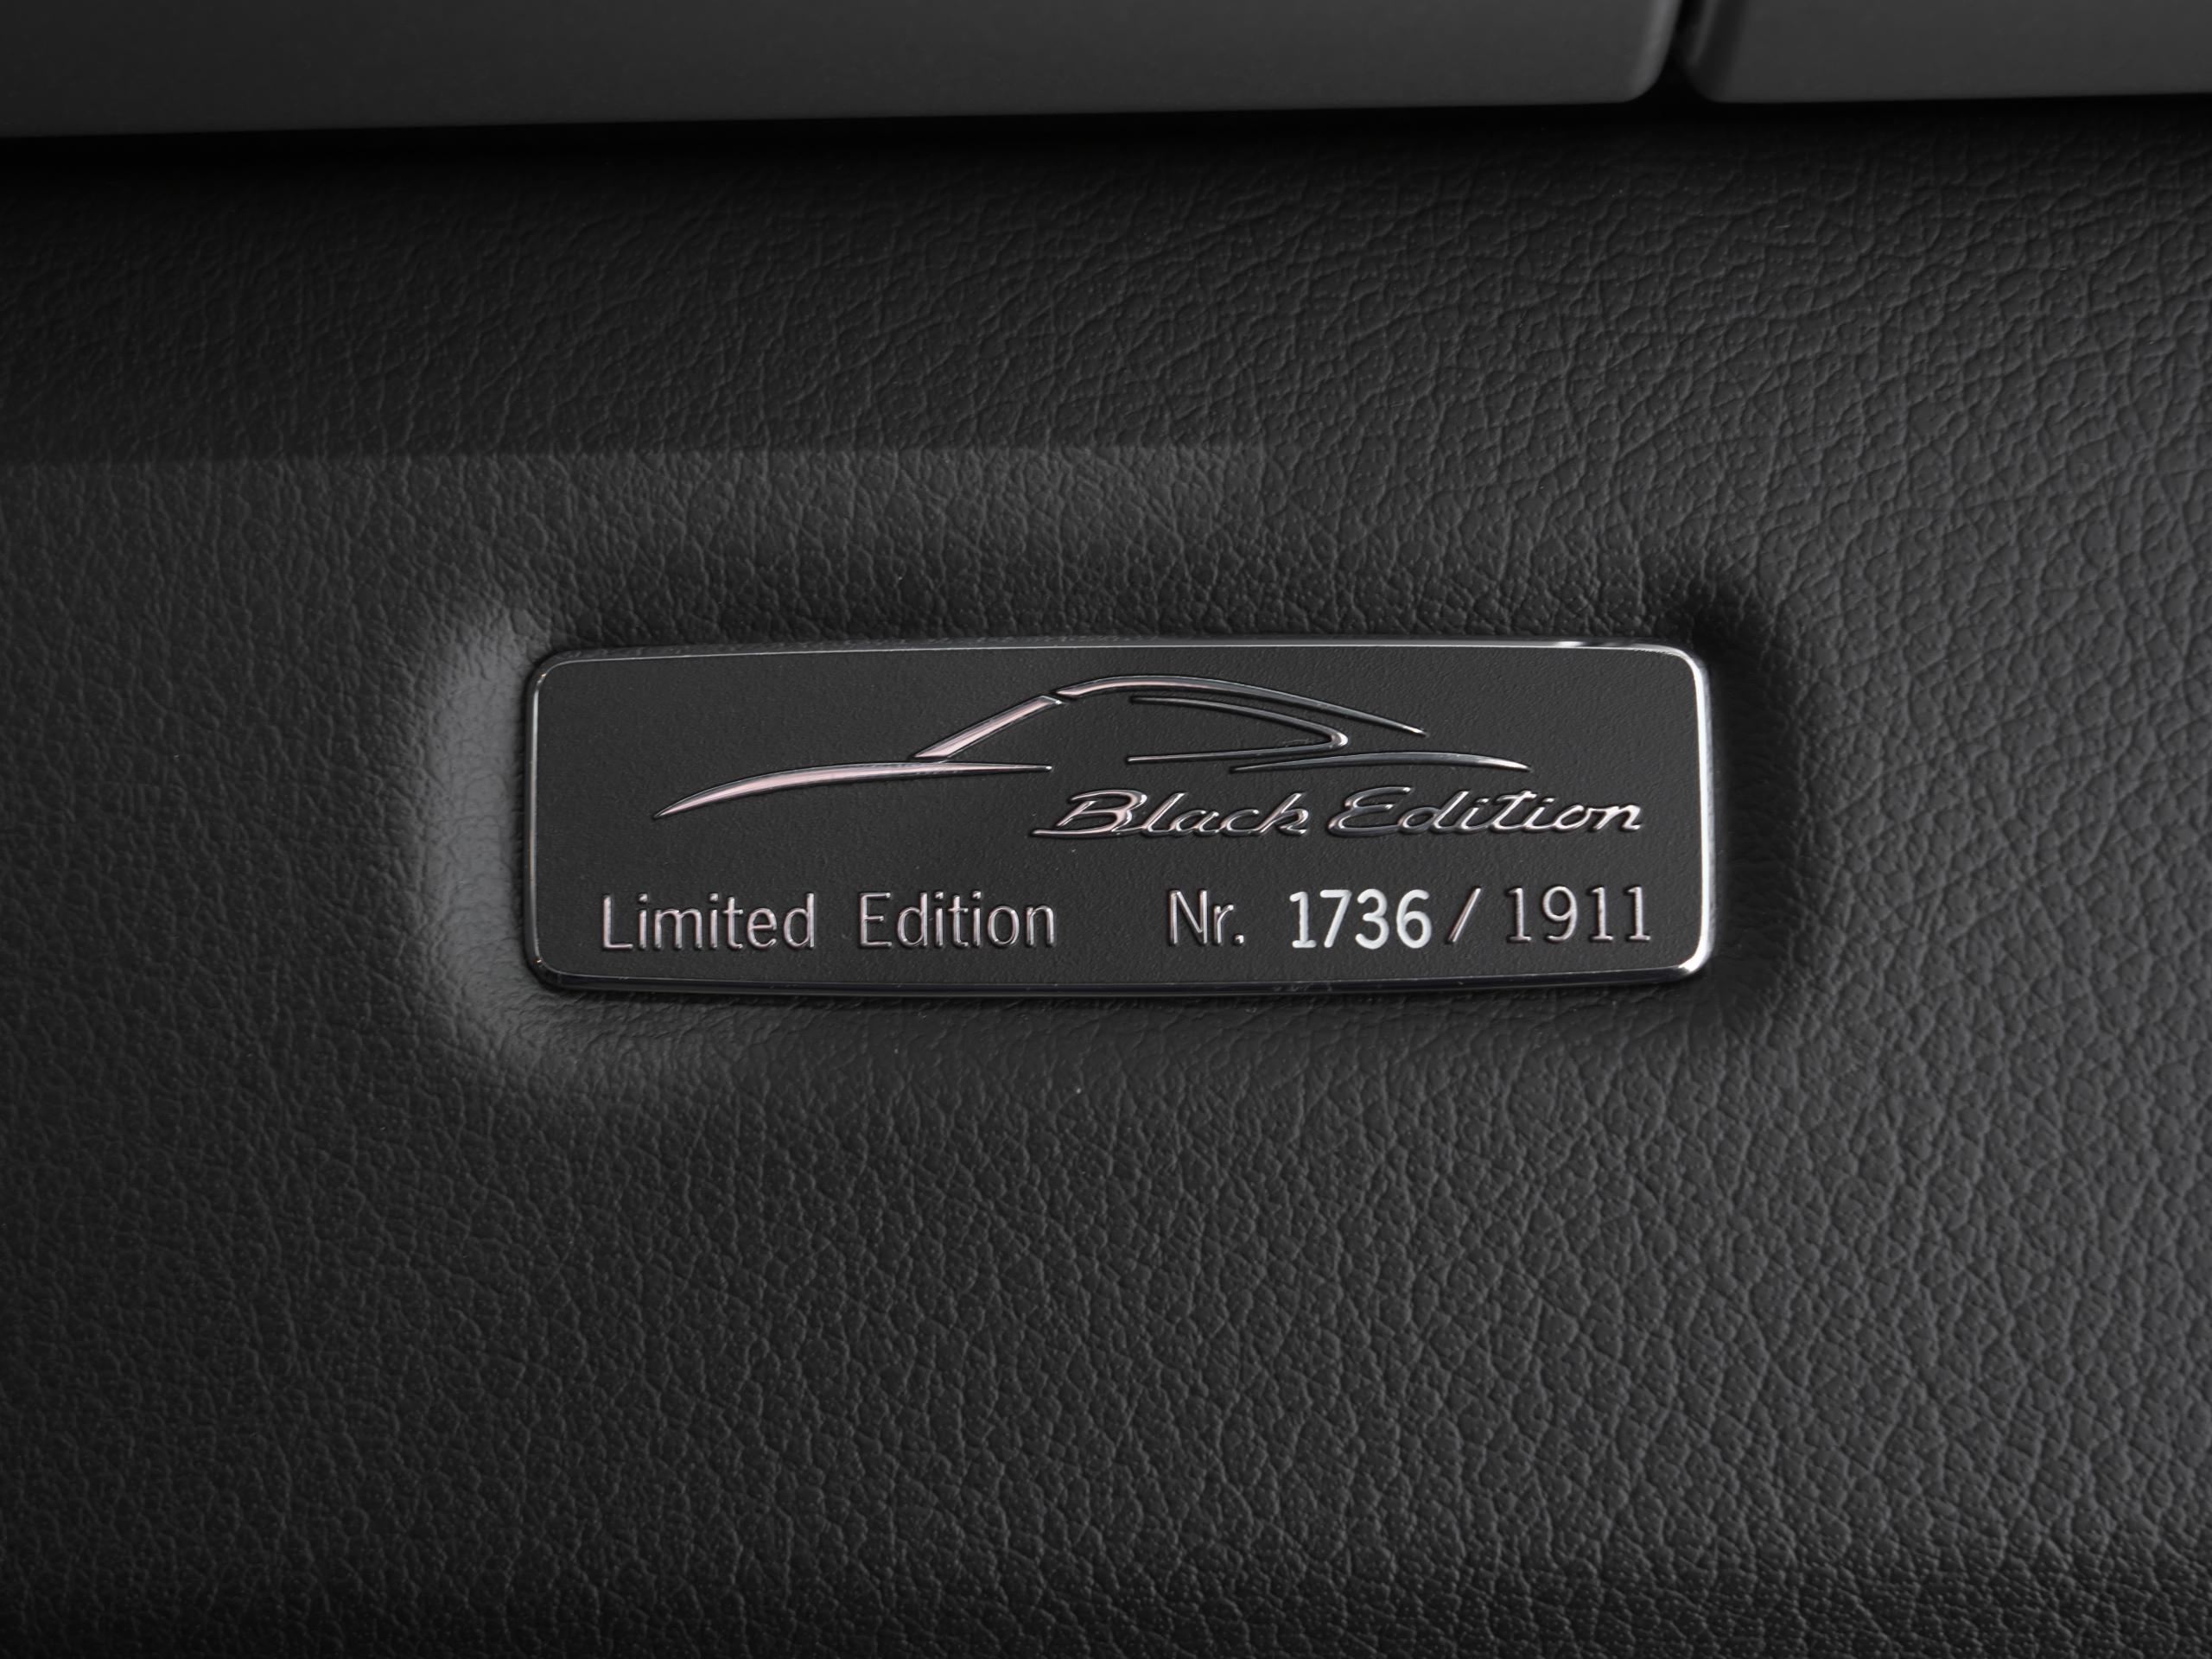 ポルシェ 911 997 カレラ ブラックエディション 限定車プレート